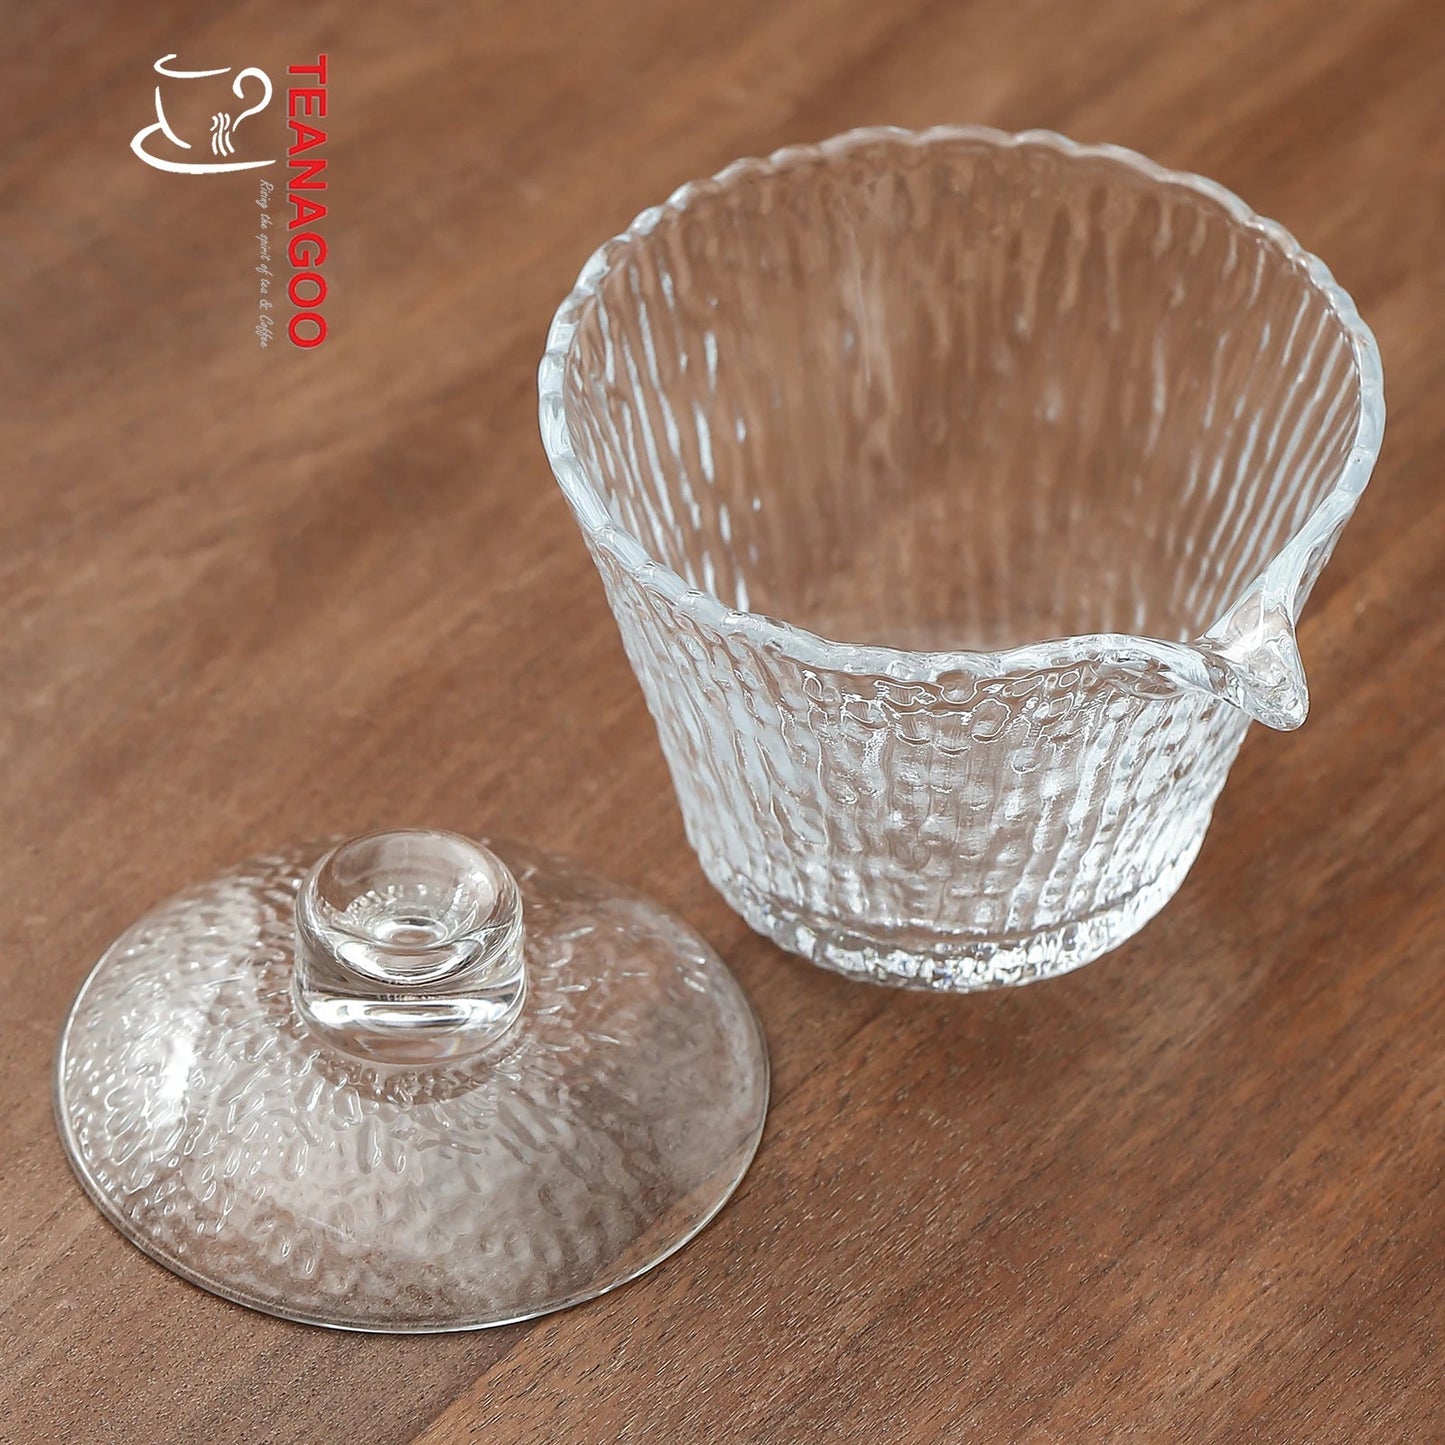 Handmade Pyrex Glass Gaiwan 150ml Teaware Cover Bowl